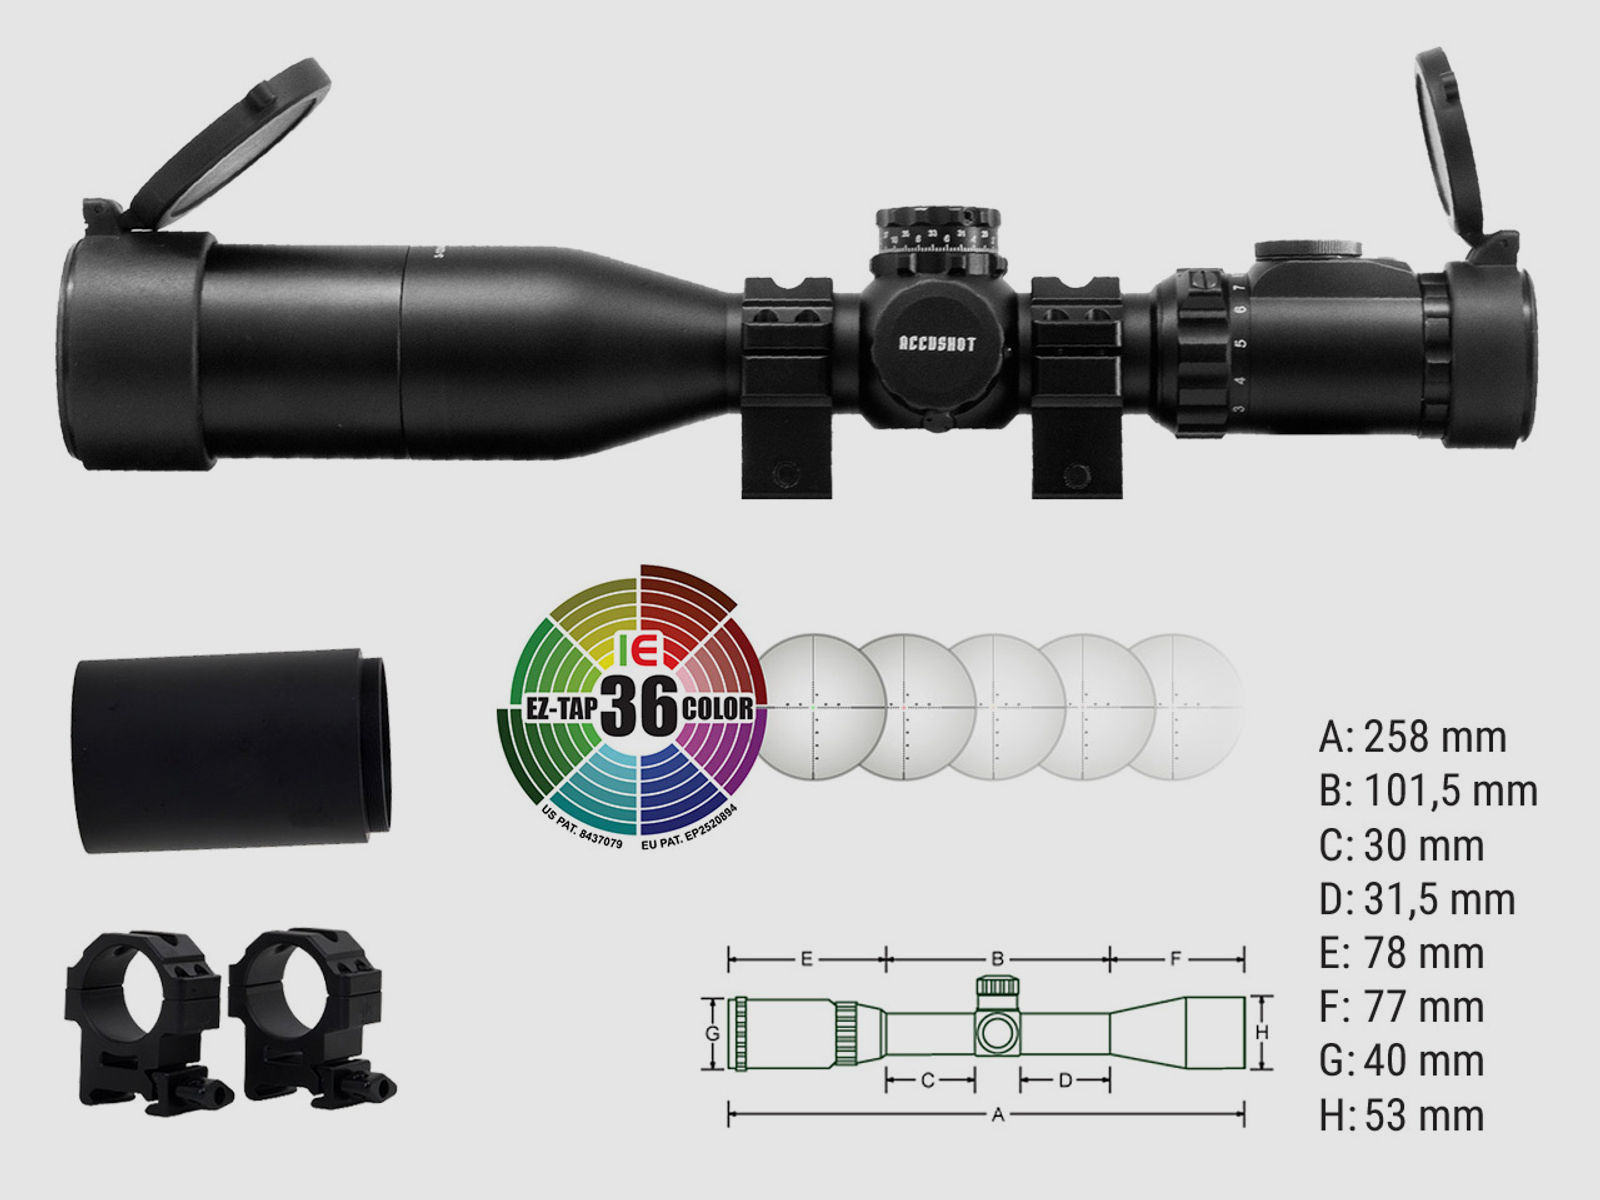 Zielfernrohr UTG Accushot OP3 3-12x44 UMOA Absehen beleuchtet 30 mm Tubus Seitenfokus inklusive Weaver-, Picatinny-Ringmontagen